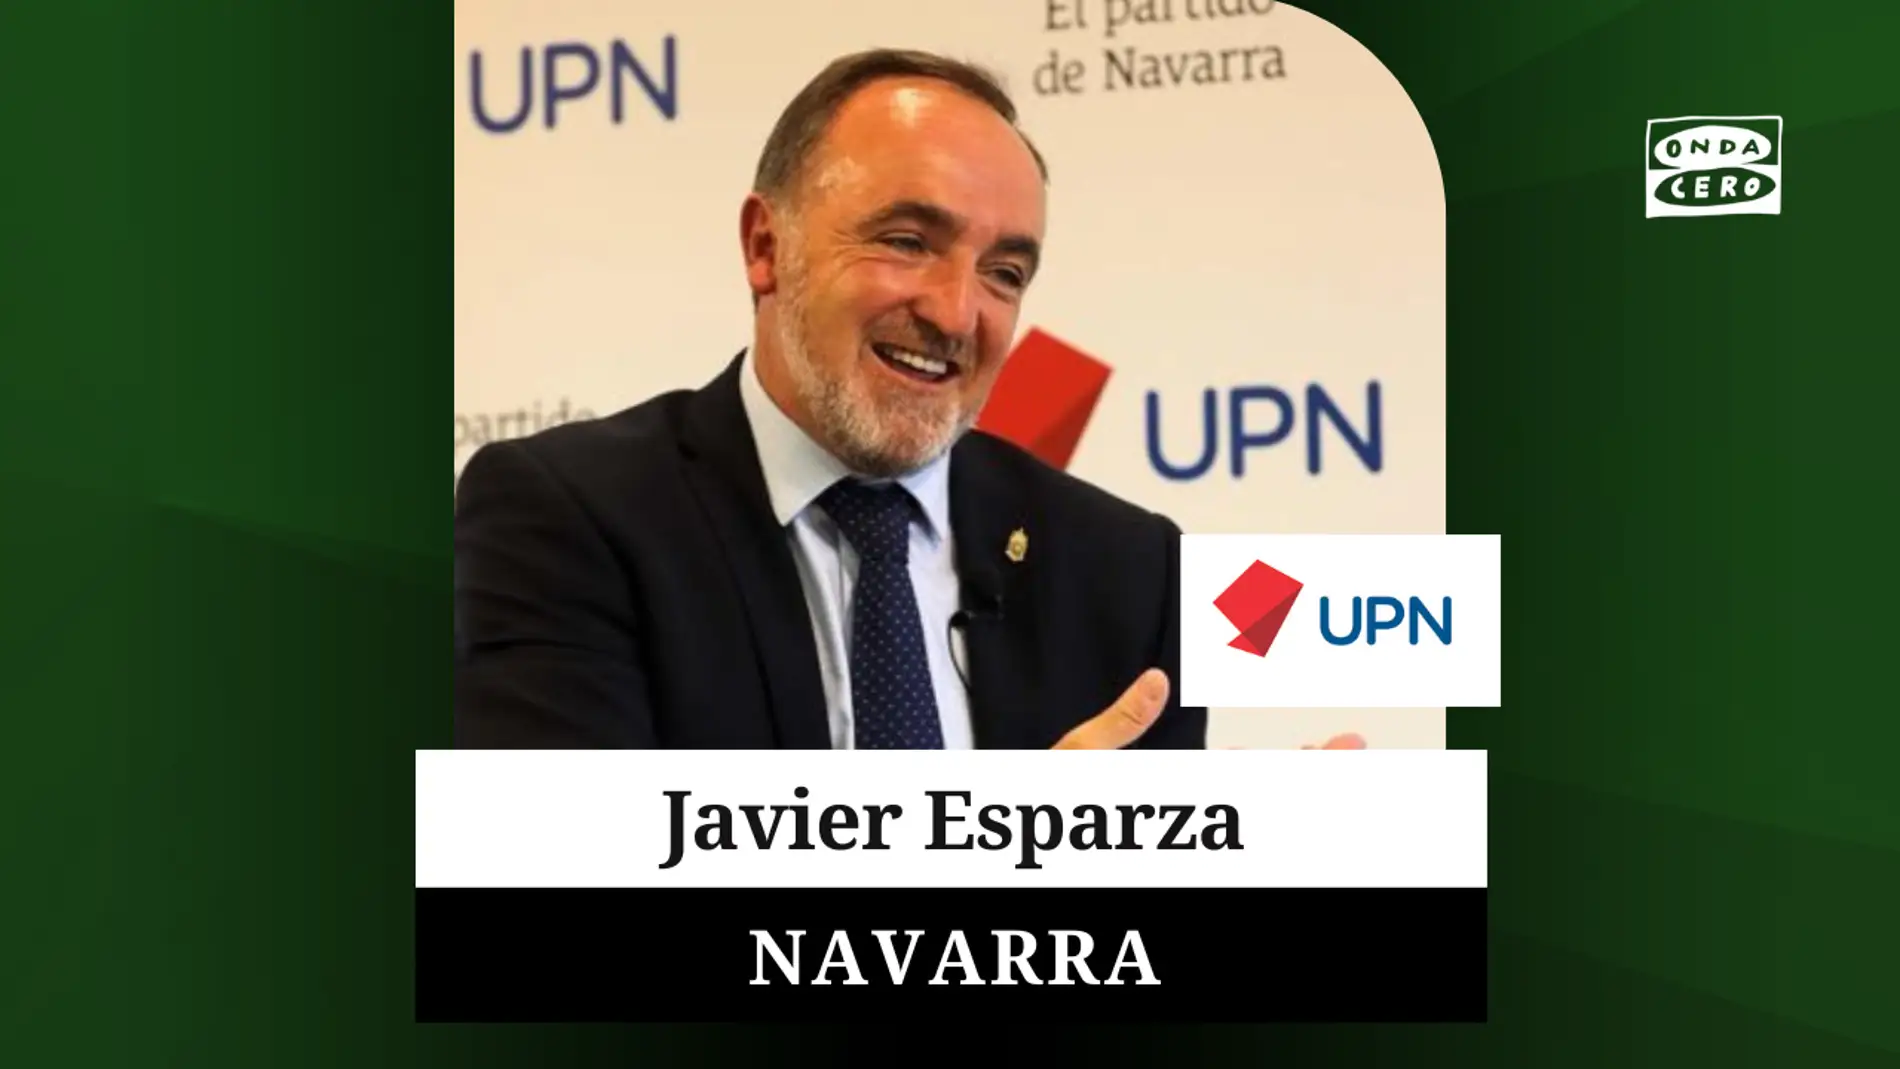 ¿Quién es Javier Esparza, candidato de UPN a la Presidencia del Gobierno de Navarra?